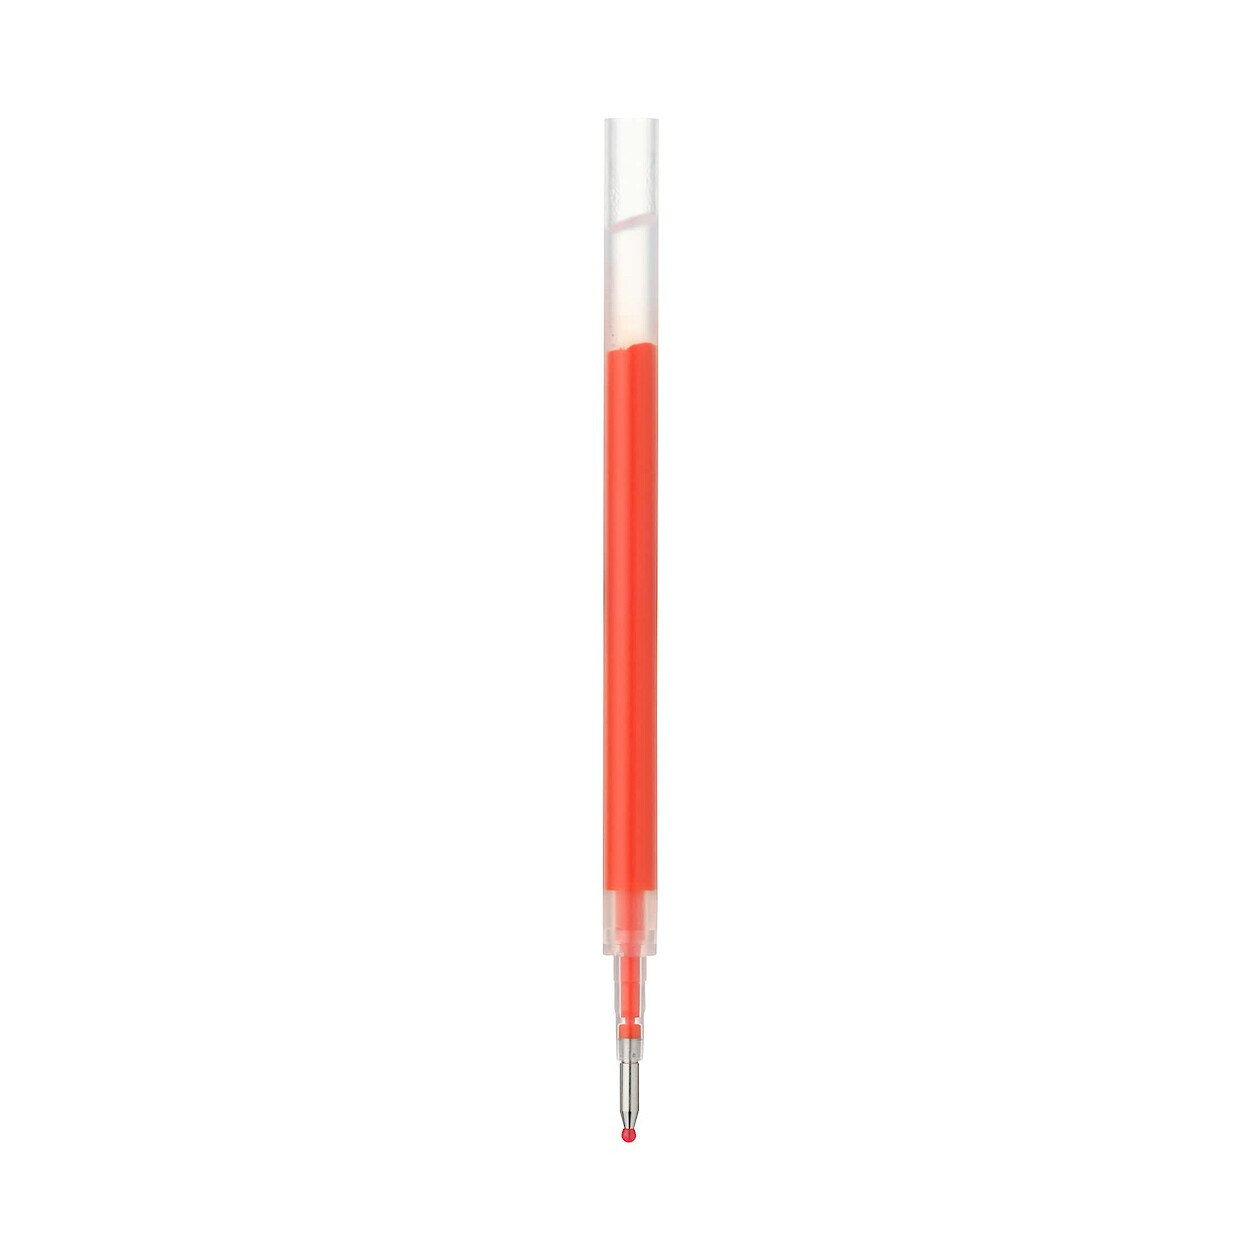 Wkład do długopisu żelowego smooth 0,5mm pomarańczowy